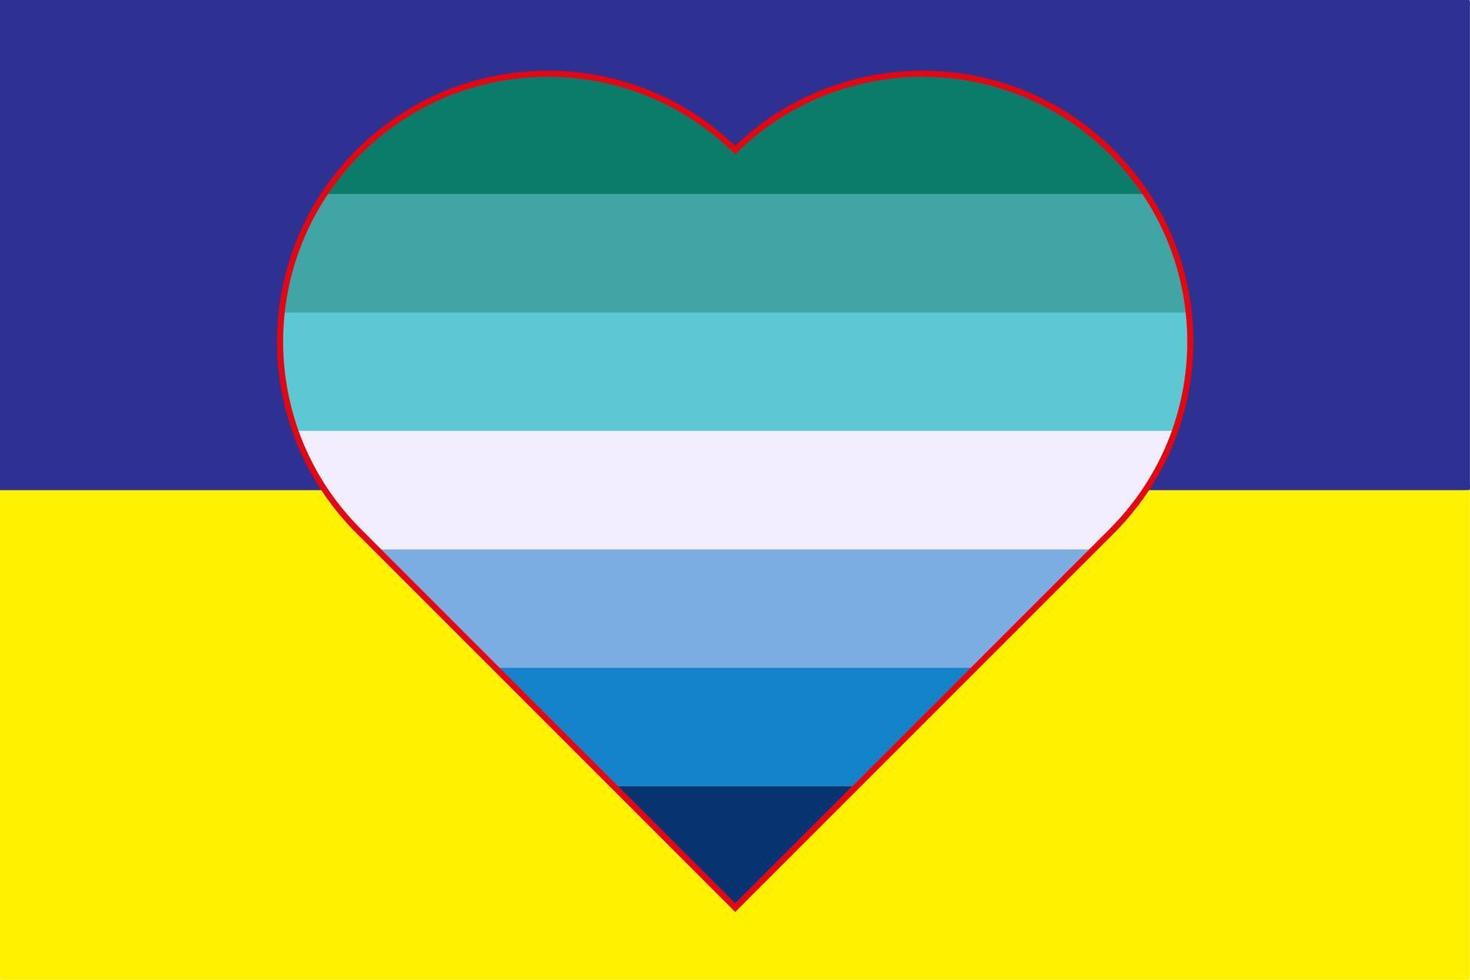 ilustración vectorial de la bandera de la bandera transgénero masculina del orgullo gay en forma de corazón en la bandera amarilla-azul de ucrania. apoyo a ucrania. vector